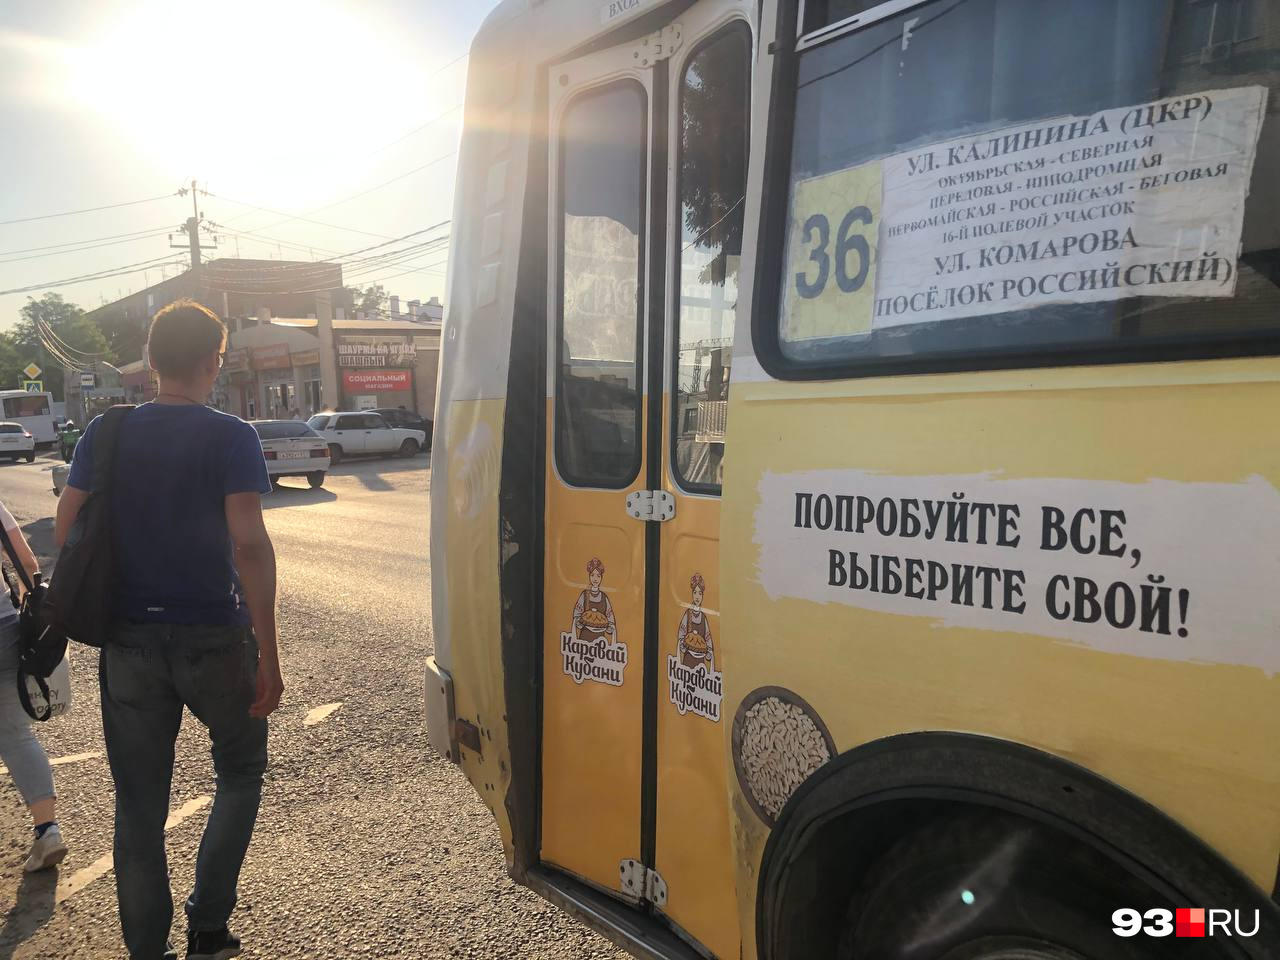 Общественный транспорт Краснодара в плачевном состоянии, а кондиционеры в маршрутках — роскошь